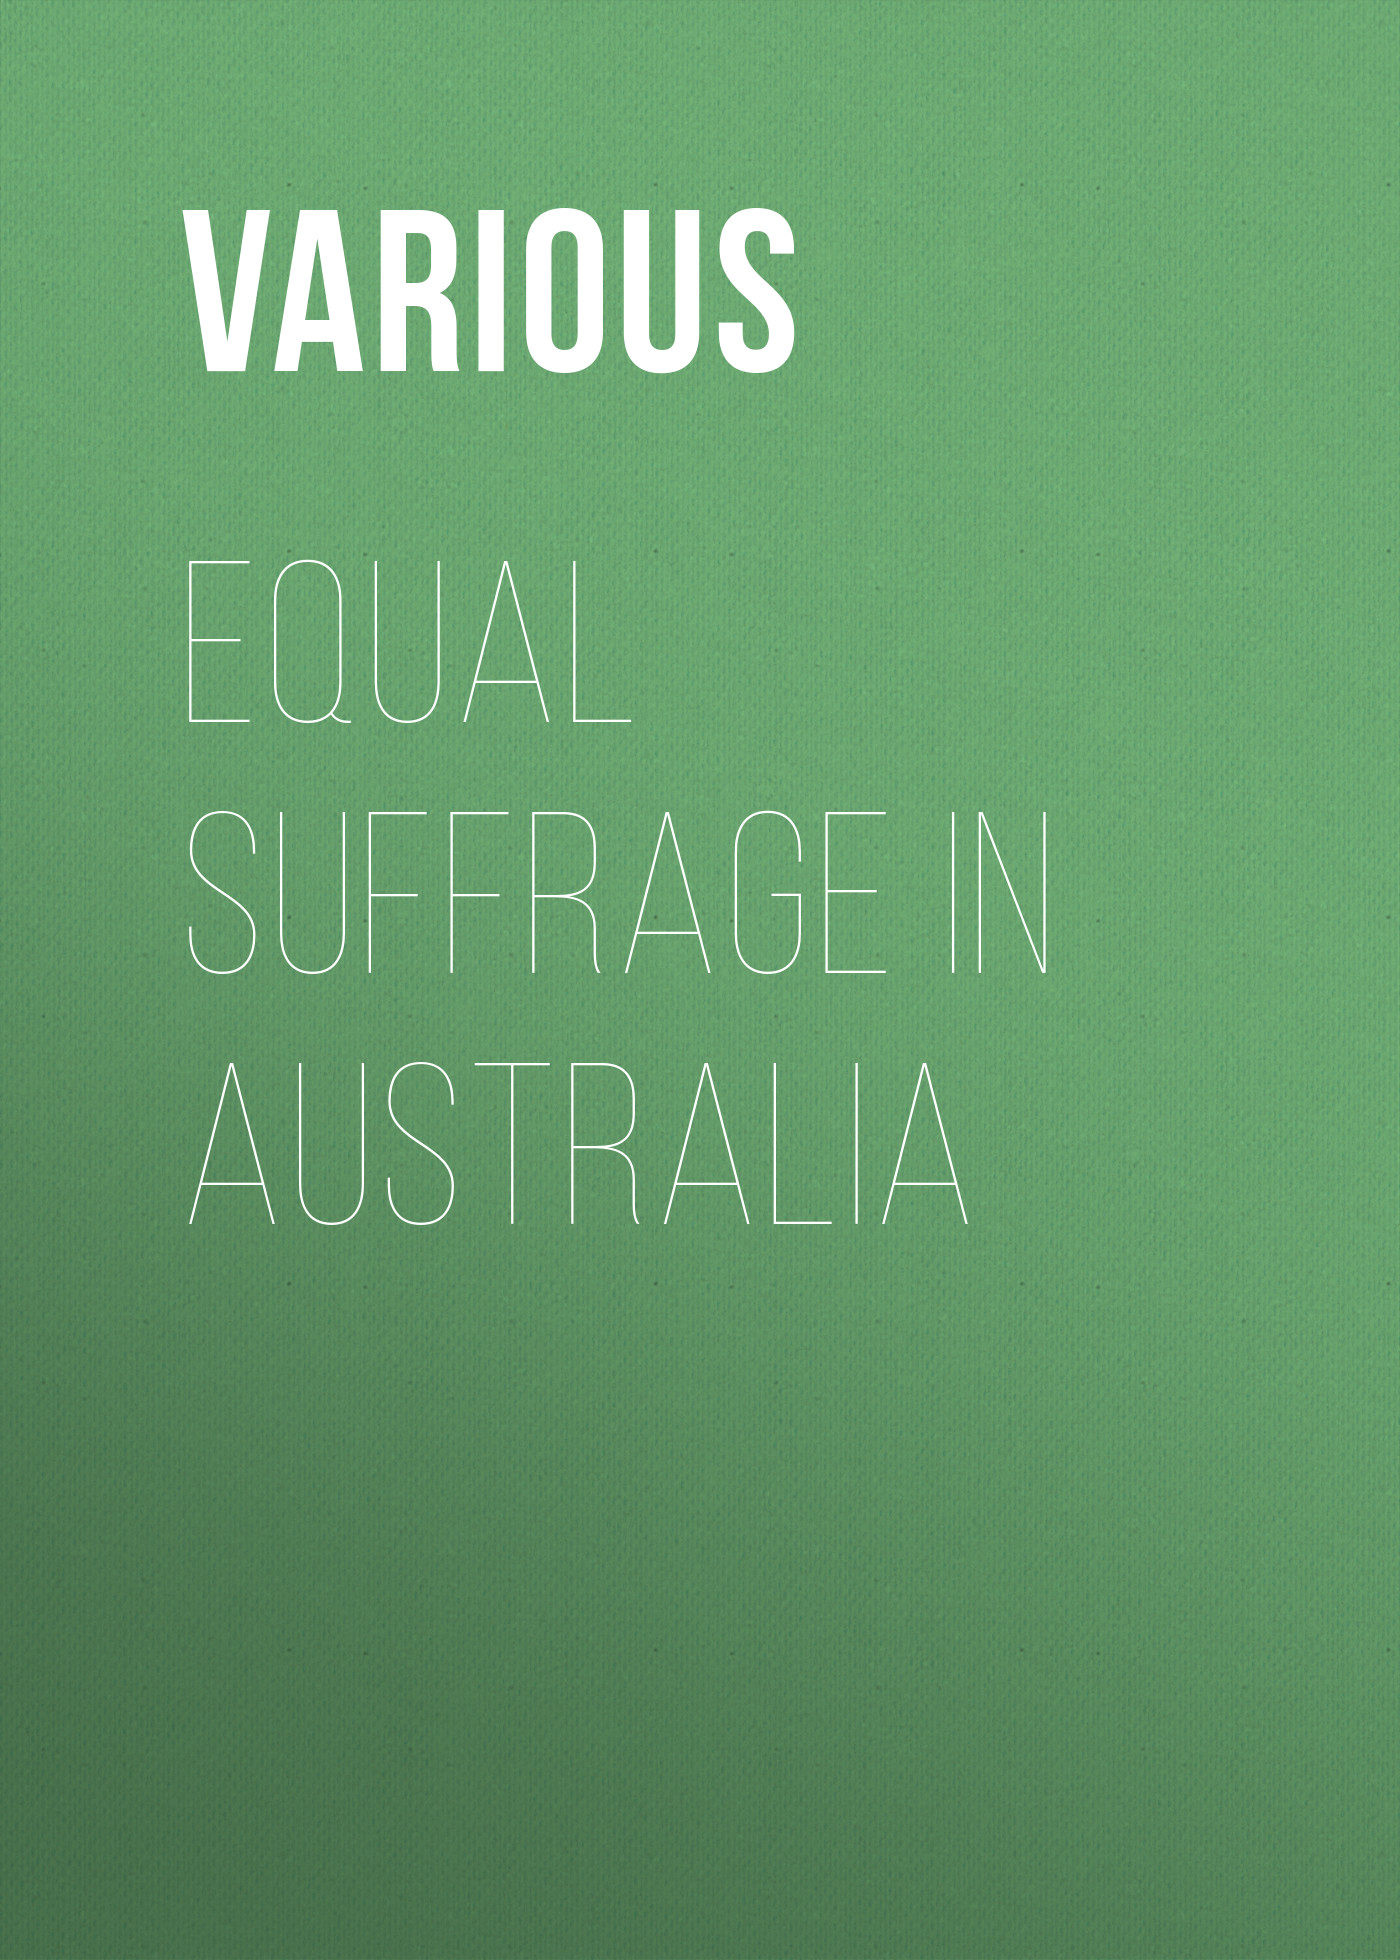 Книга Equal Suffrage in Australia из серии , созданная  Various, может относится к жанру Секс и семейная психология, Зарубежная образовательная литература. Стоимость электронной книги Equal Suffrage in Australia с идентификатором 25715434 составляет 0 руб.